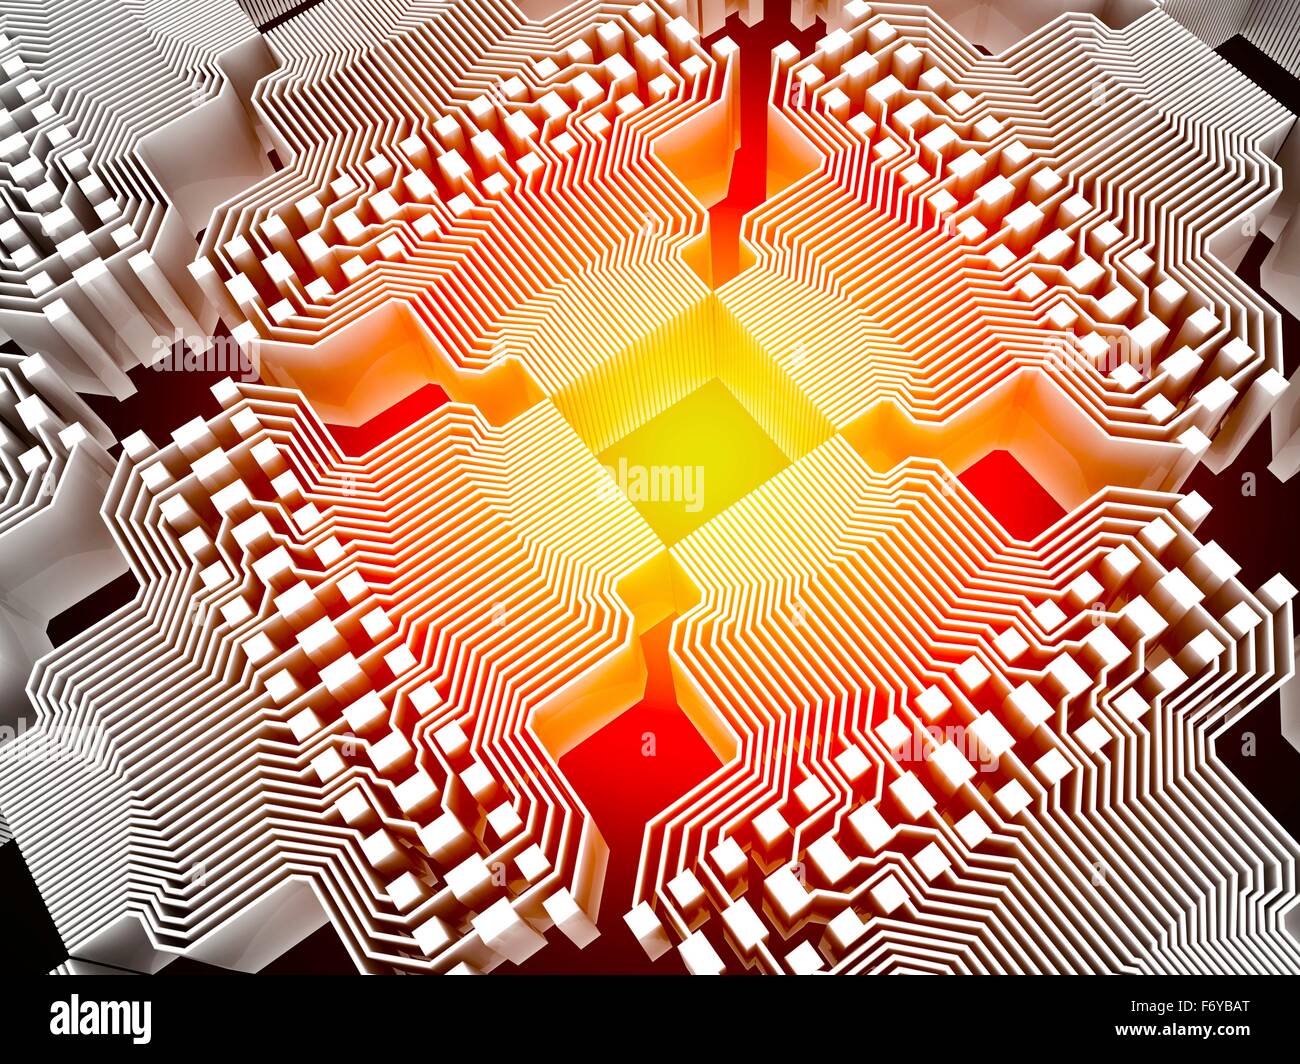 Computer quantistico. Calcolatore concettuale illustrazione della circuiteria elettronica con luce rossa che passa attraverso di esso, che rappresenta il modo in cui i dati possono essere controllati e memorizzati in un computer quantistico. Foto Stock